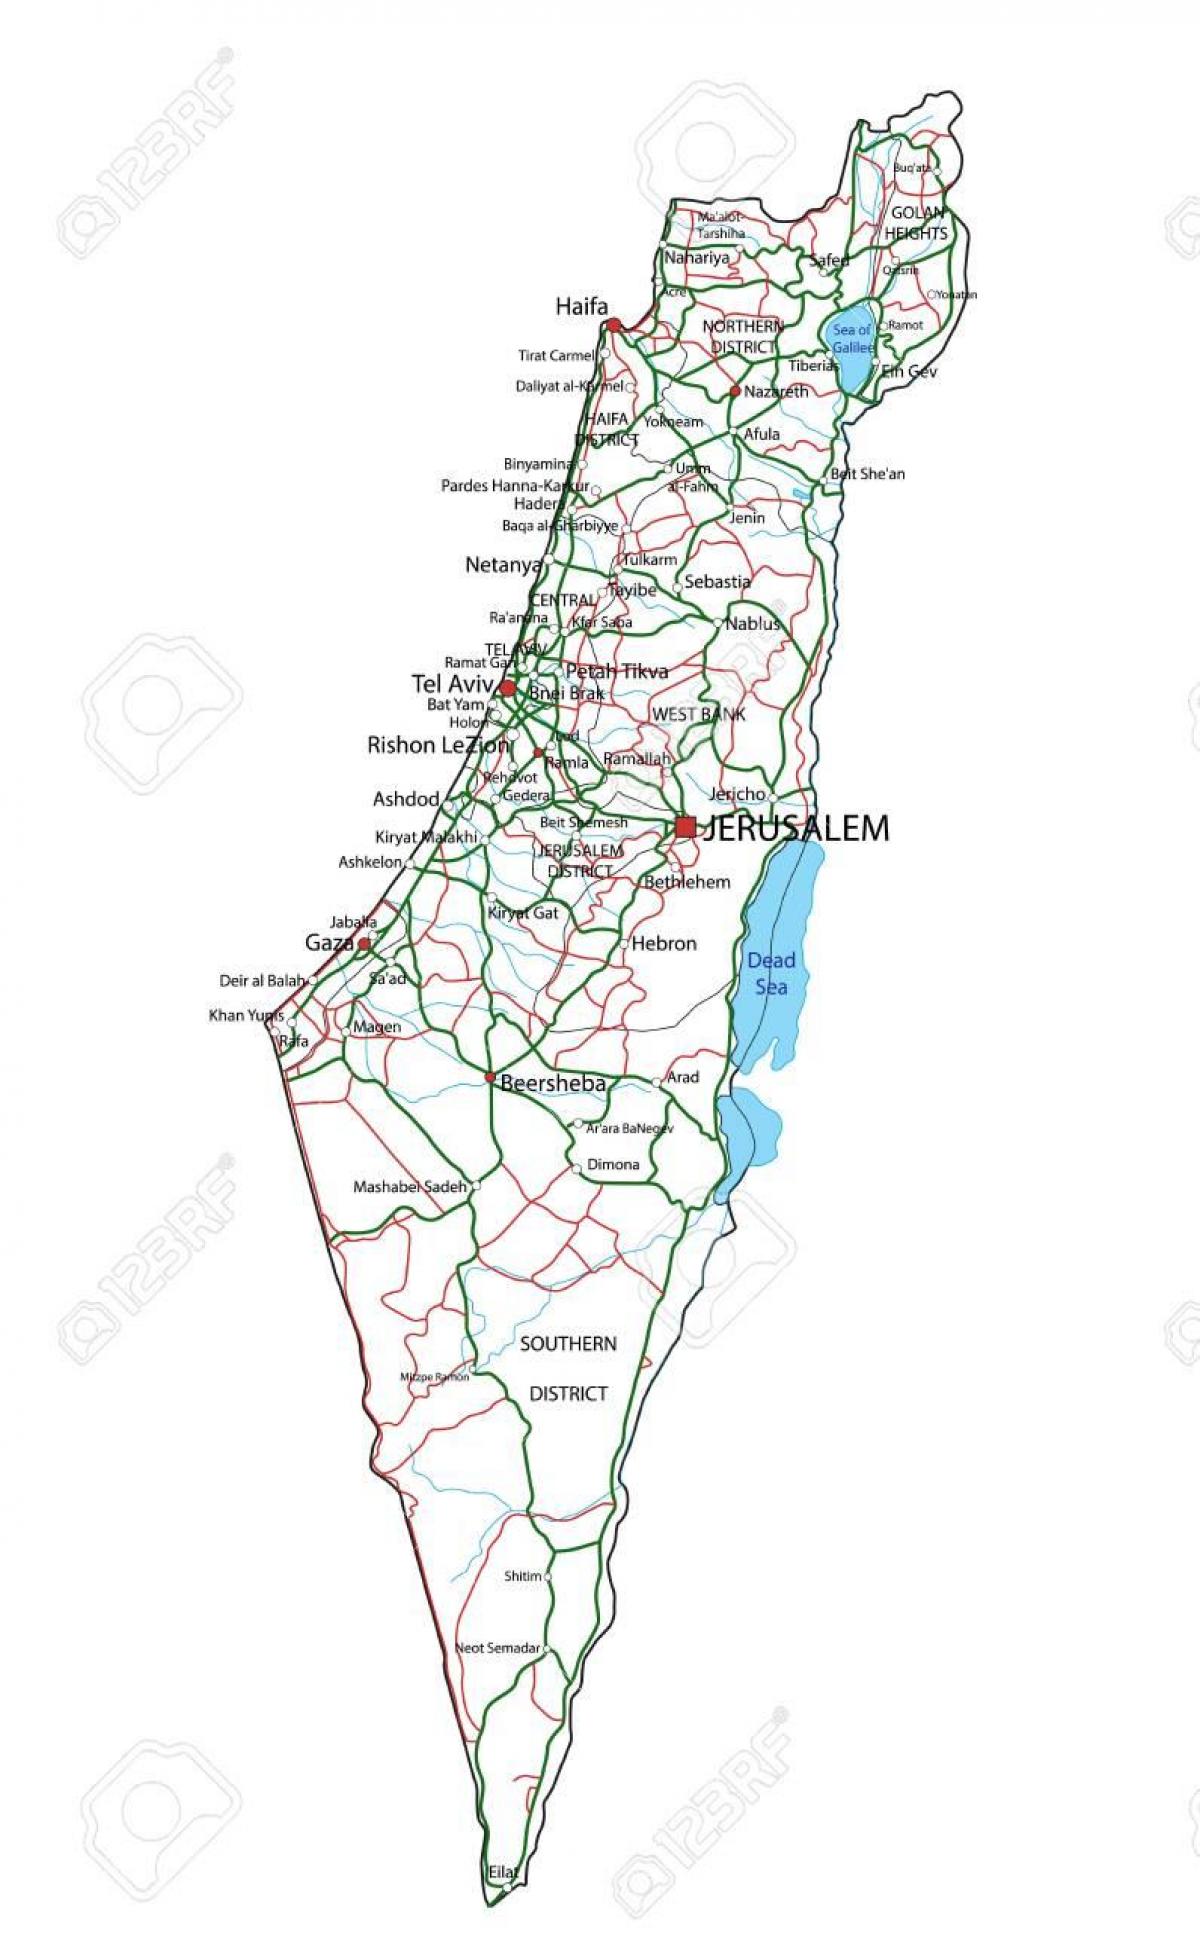 خريطة الطريق السريع لإسرائيل